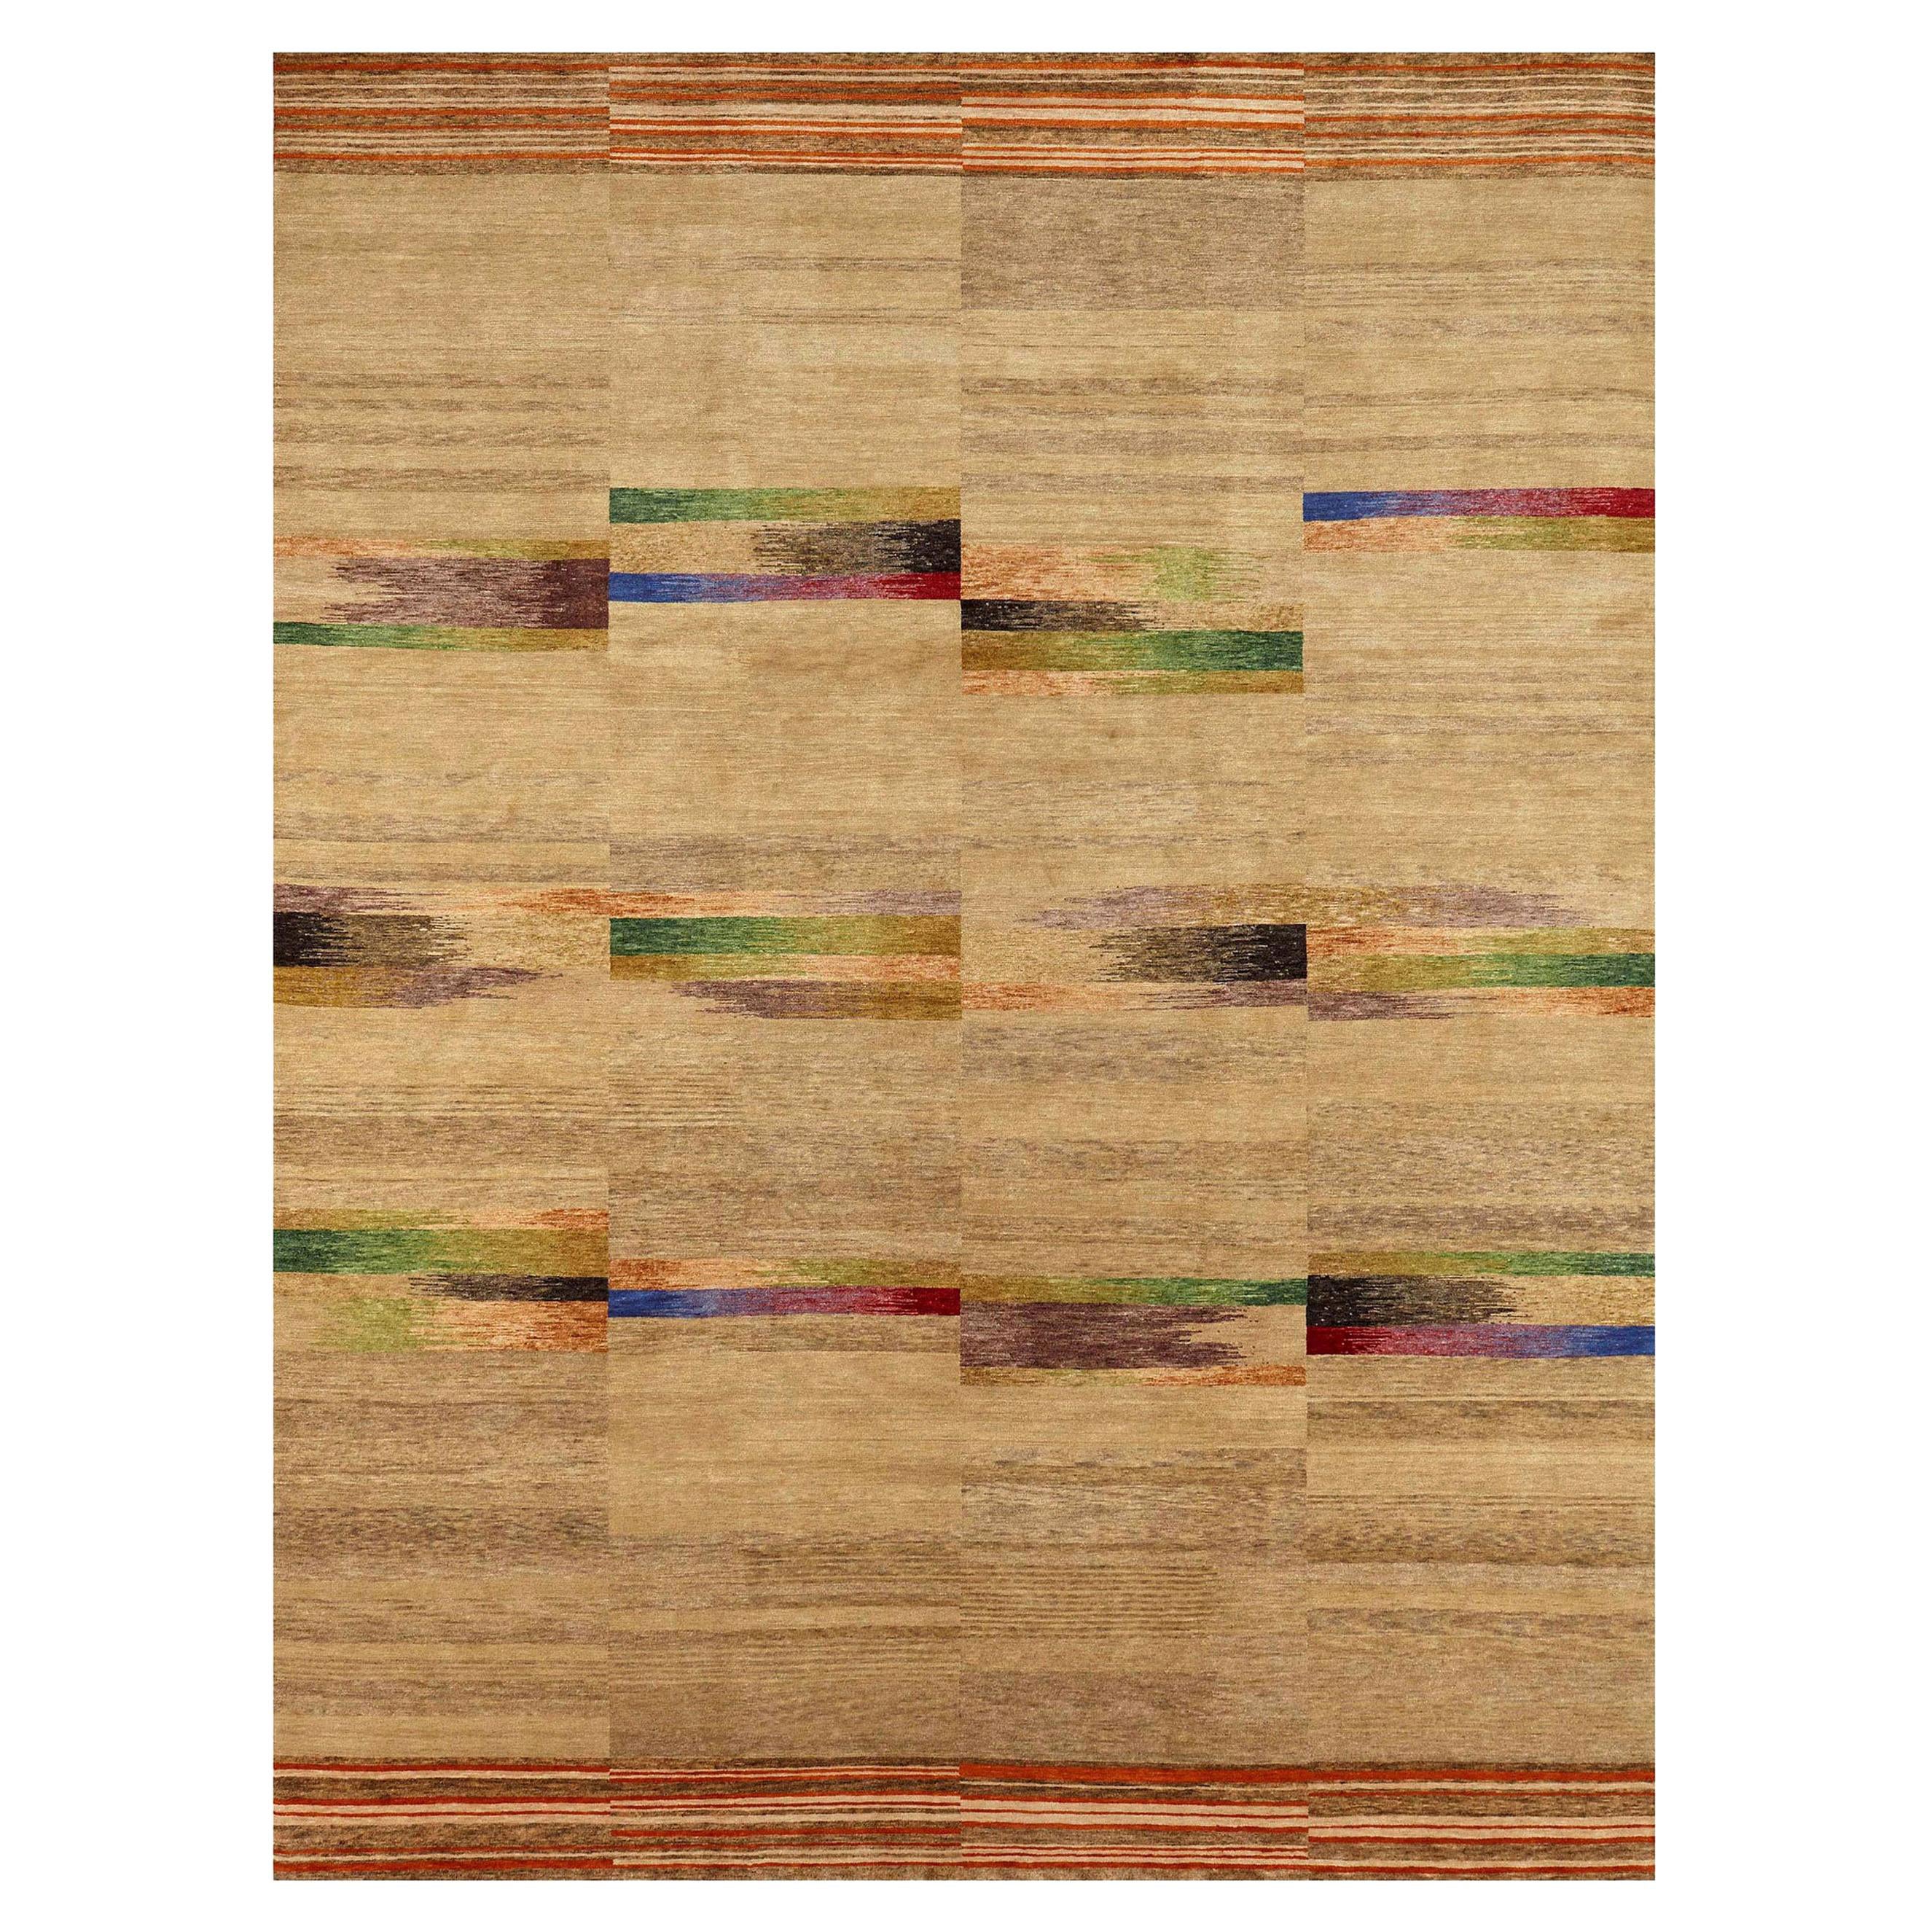 Zeitgenössischer geometrischer Navajo-Sand-Teppich aus Wolle und Seide von Doris Leslie Blau